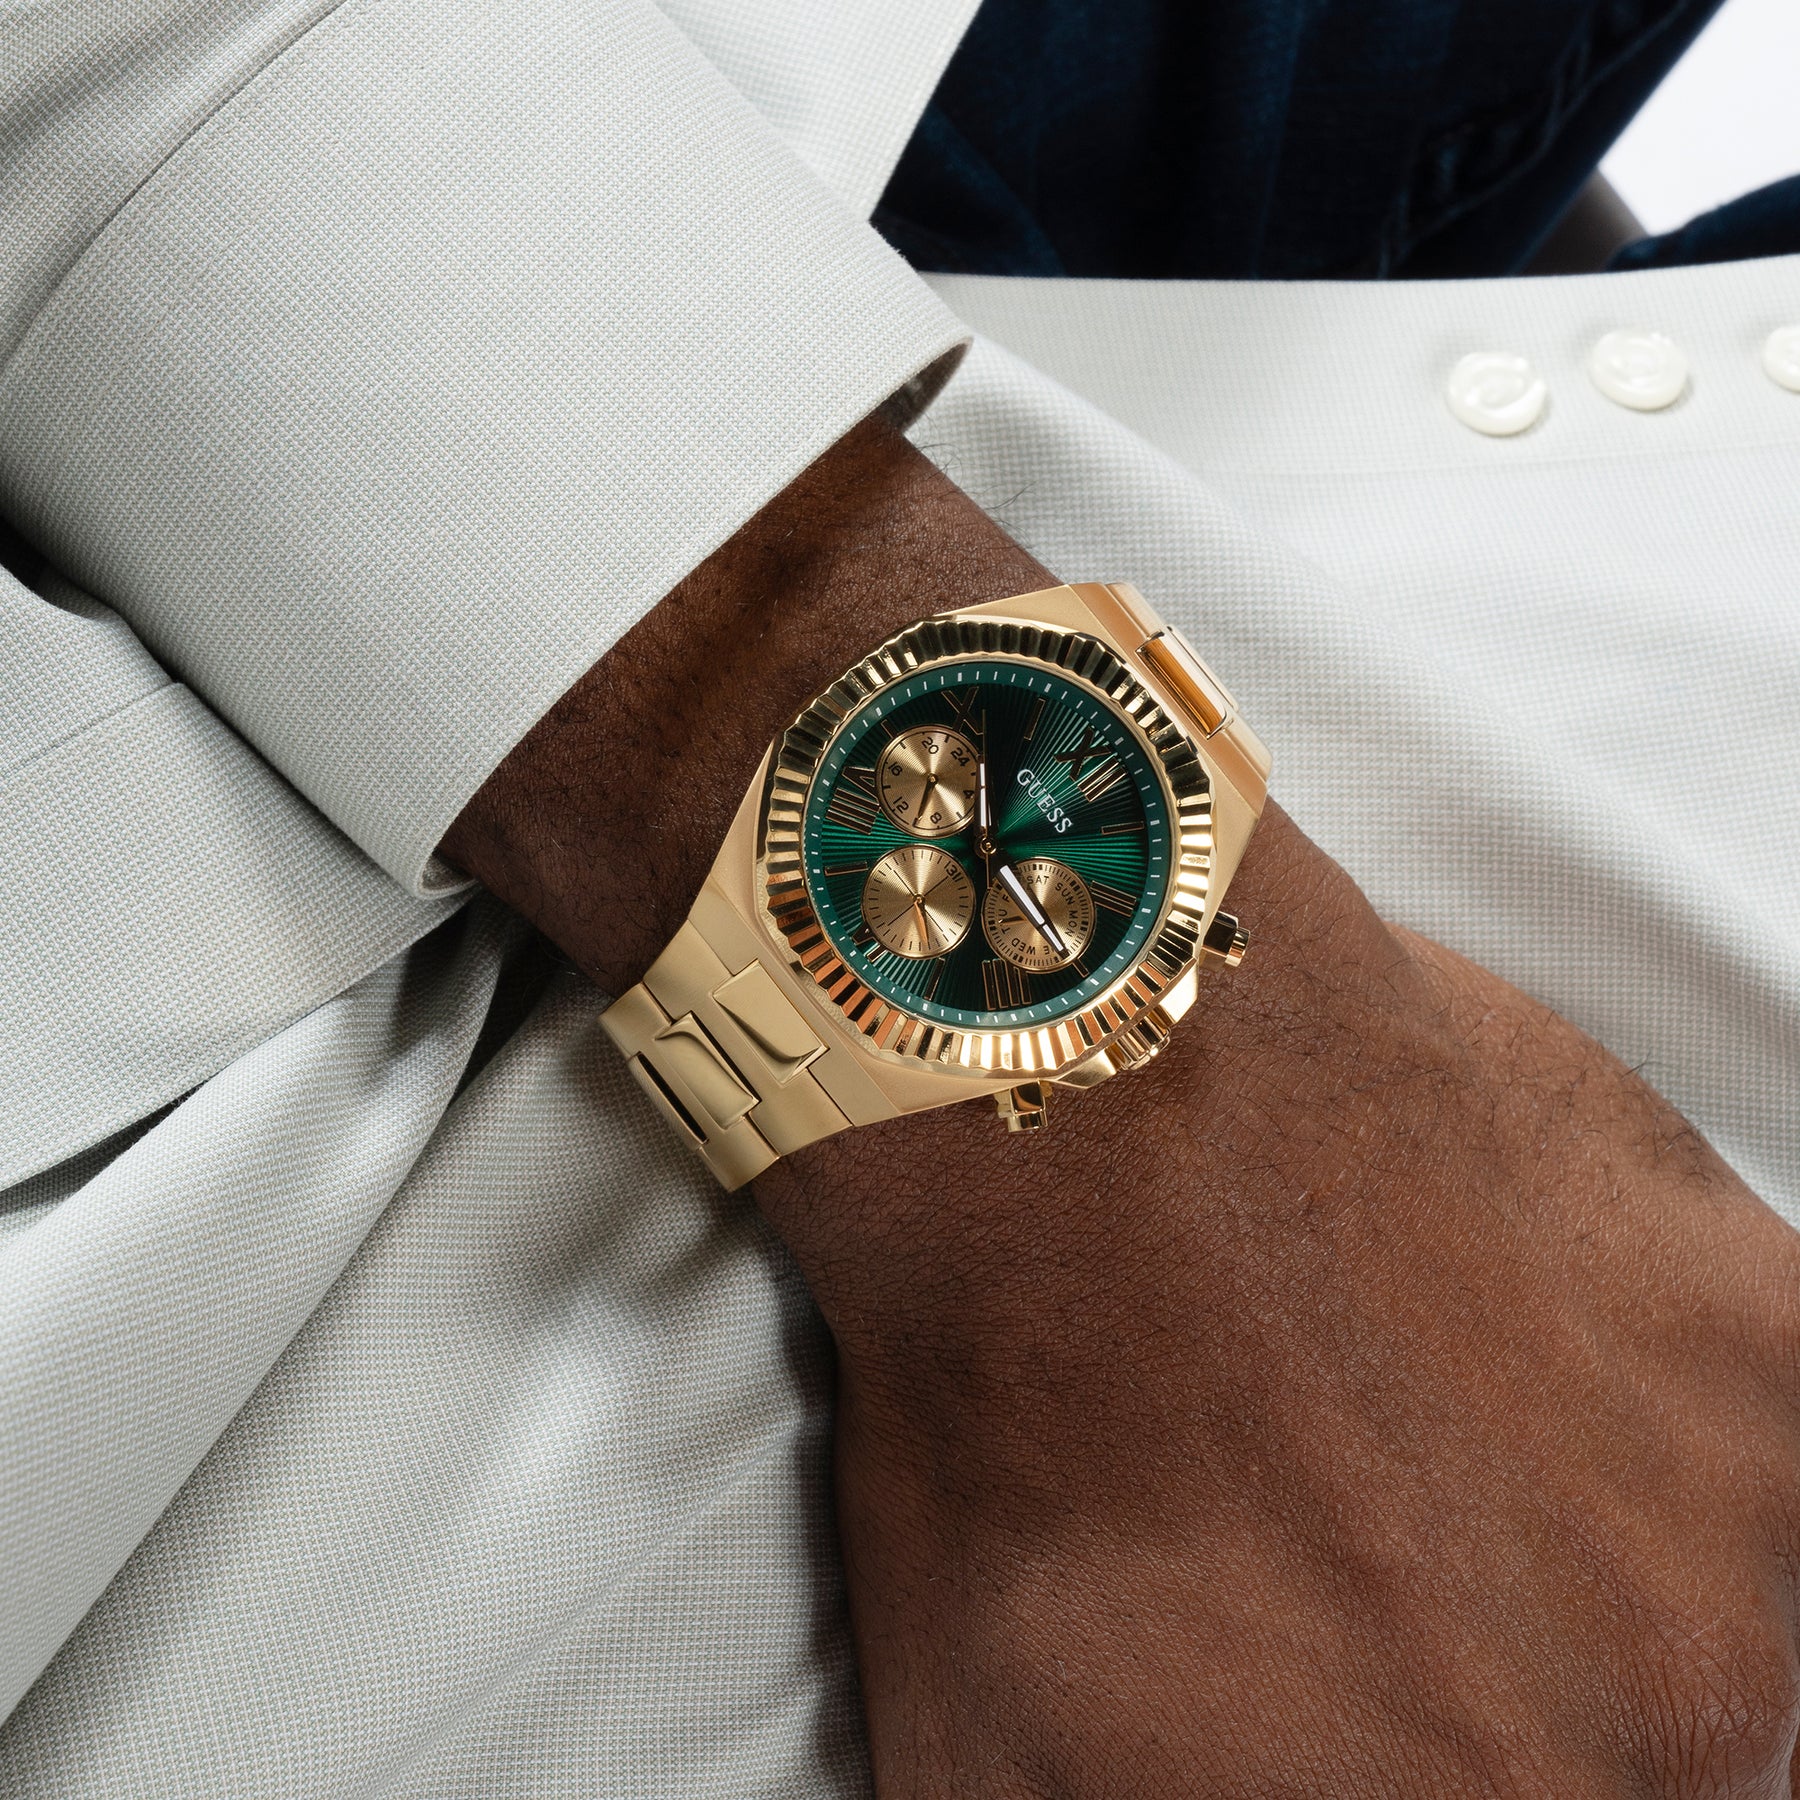 Guess Men's 44mm Gold Equity Green Quartz Watch GW0703G2